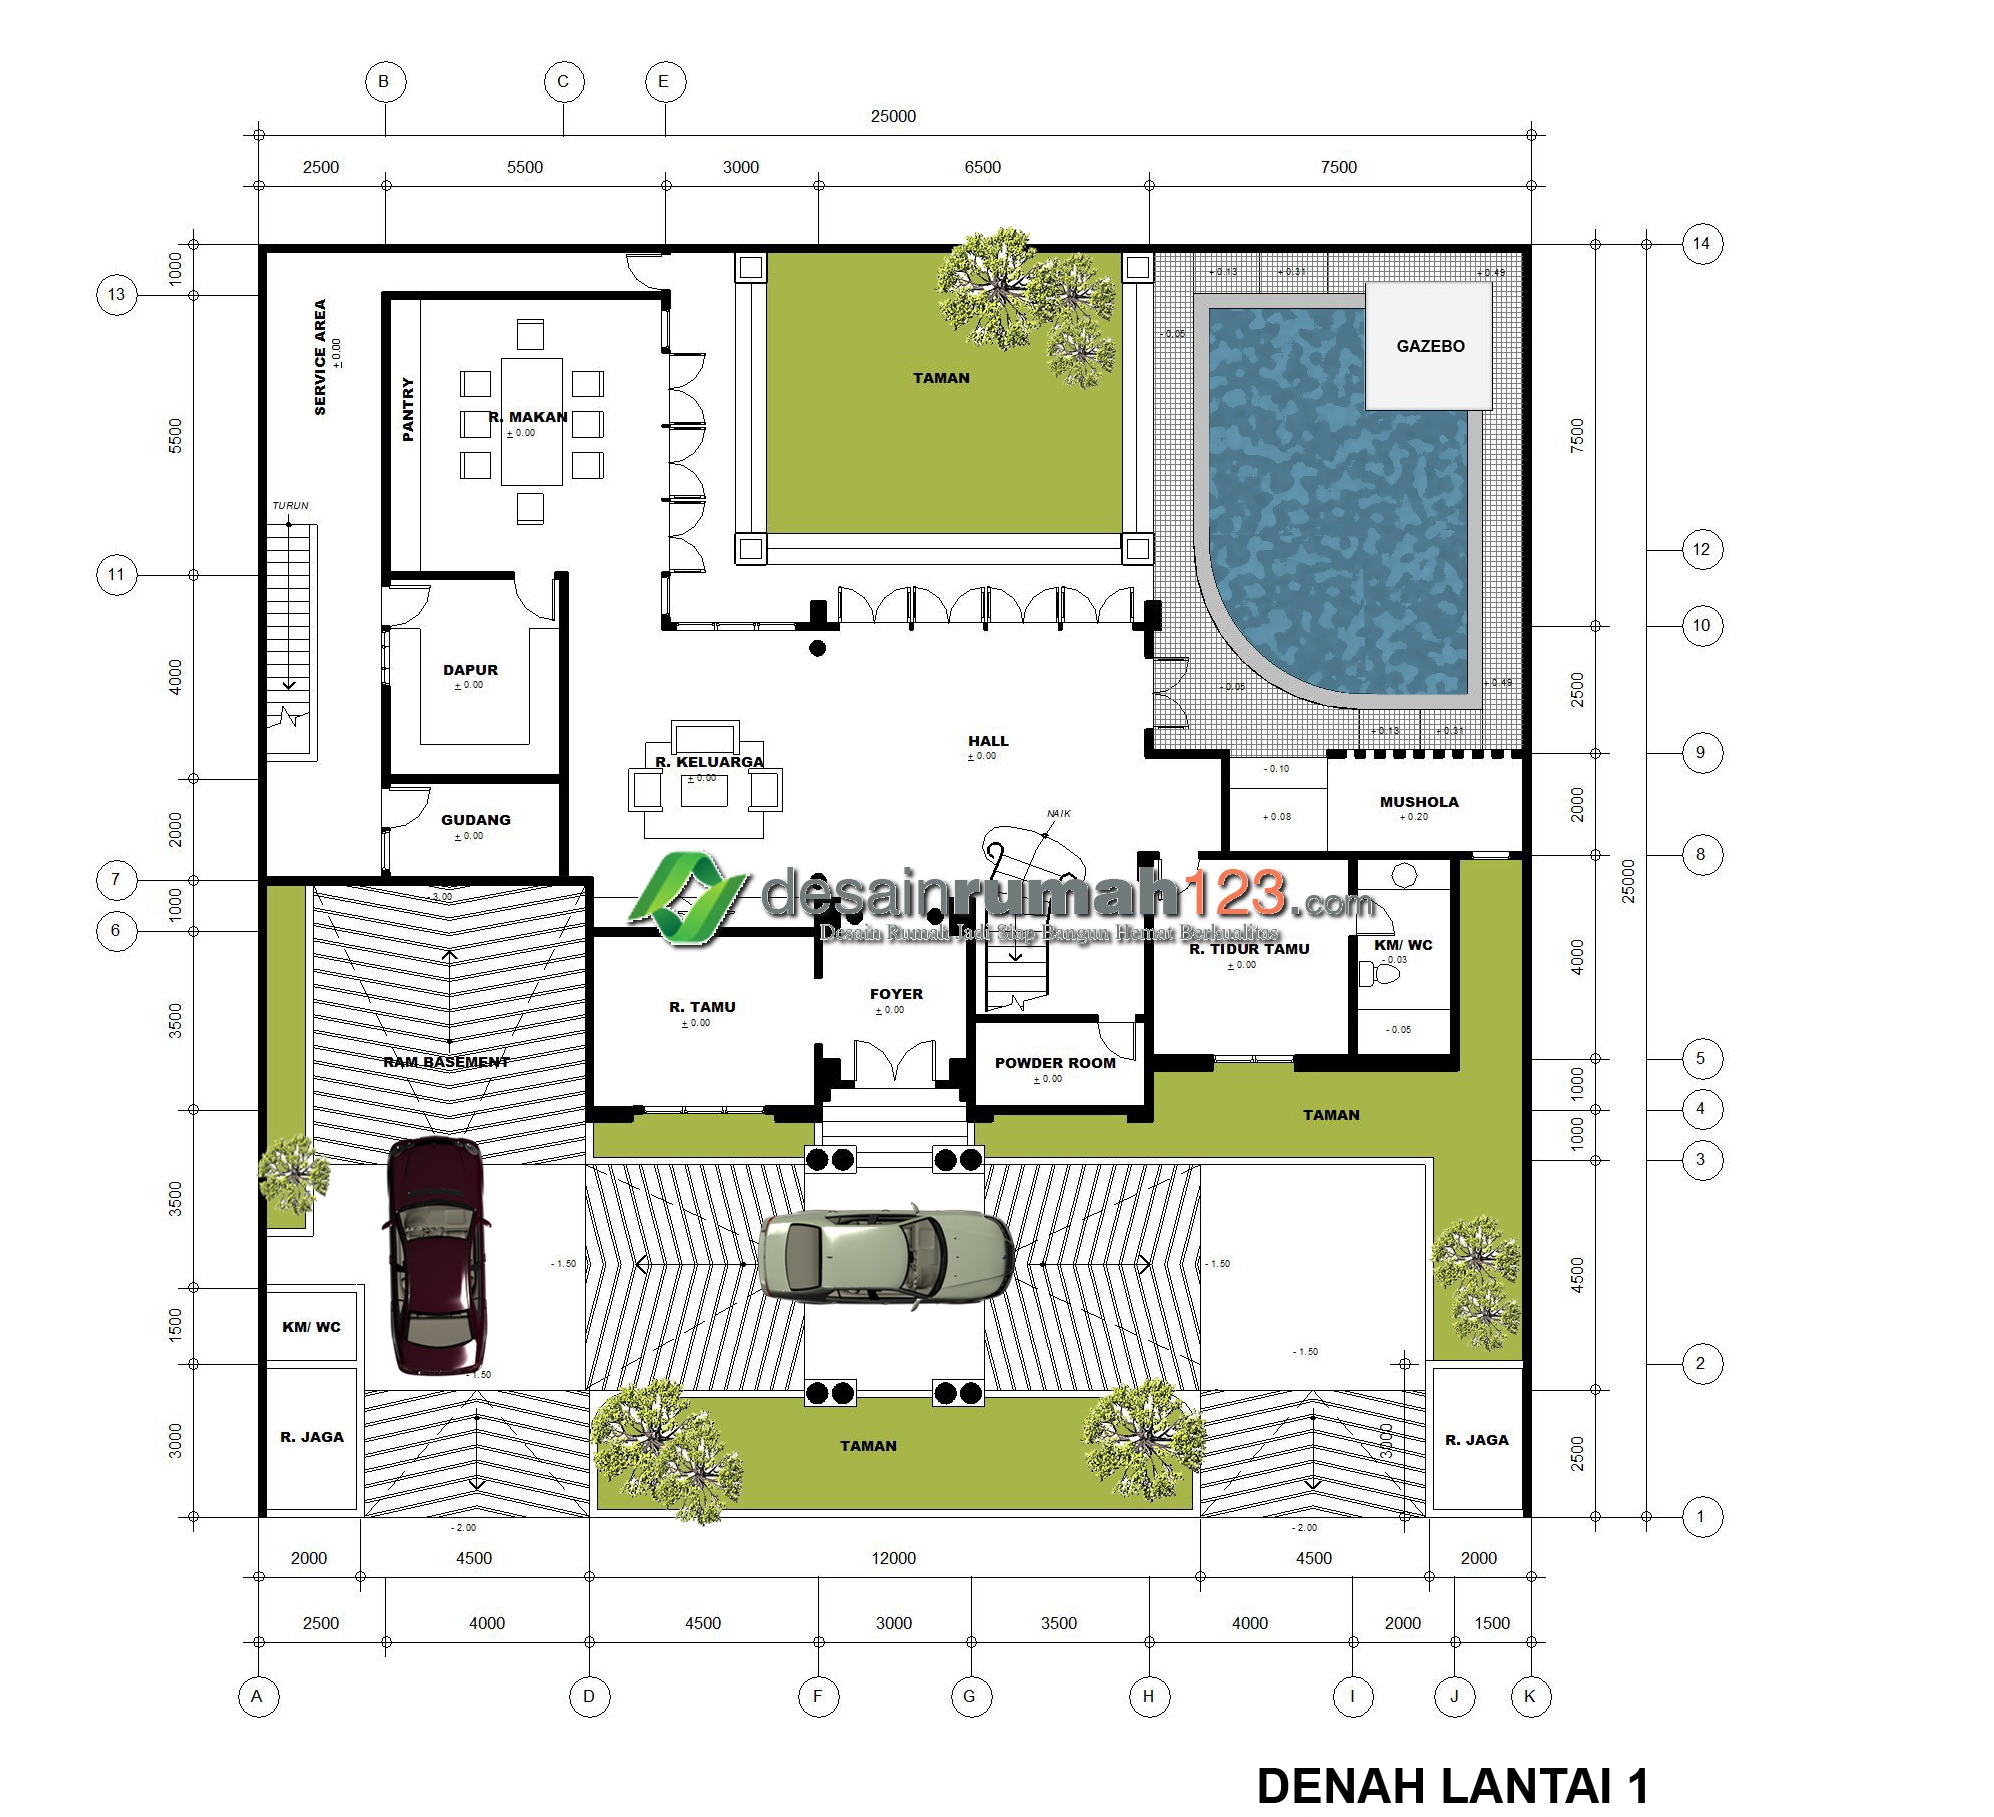 Desain Rumah Klasik 3 Lantai di Lahan 25 x 25 M2